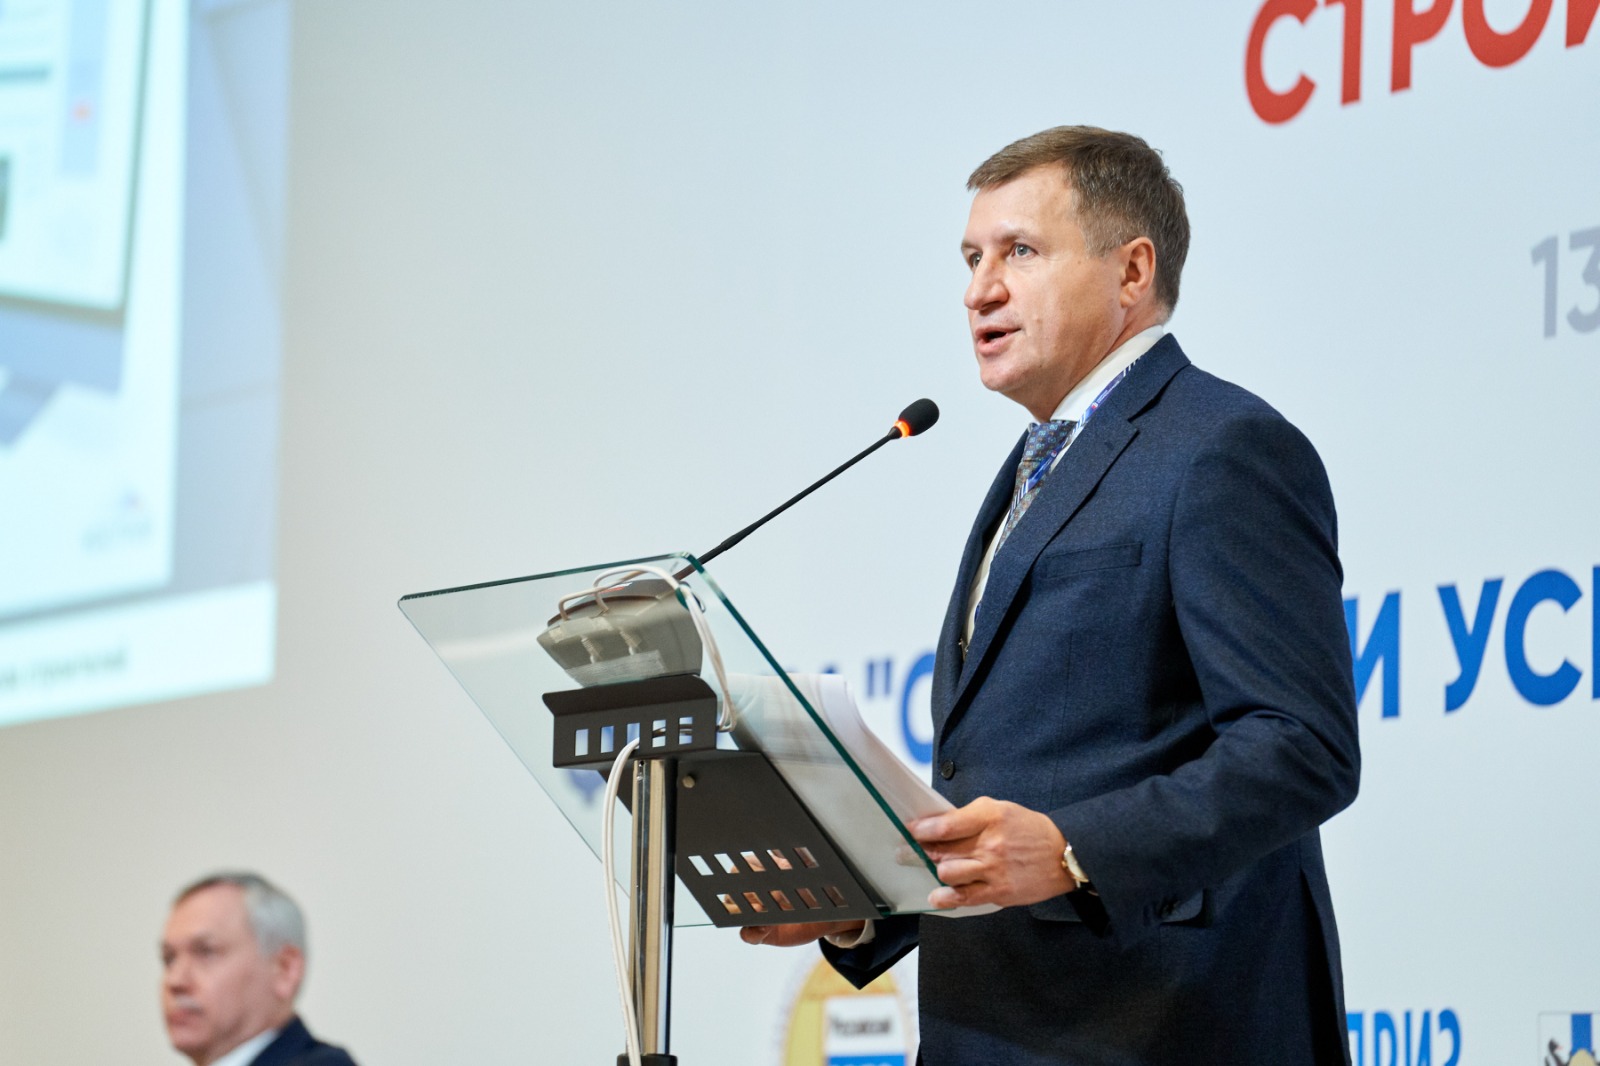 Максим Федорченко, вице-президент РСС: Взгляд на инновационное развитие строительной отрасли